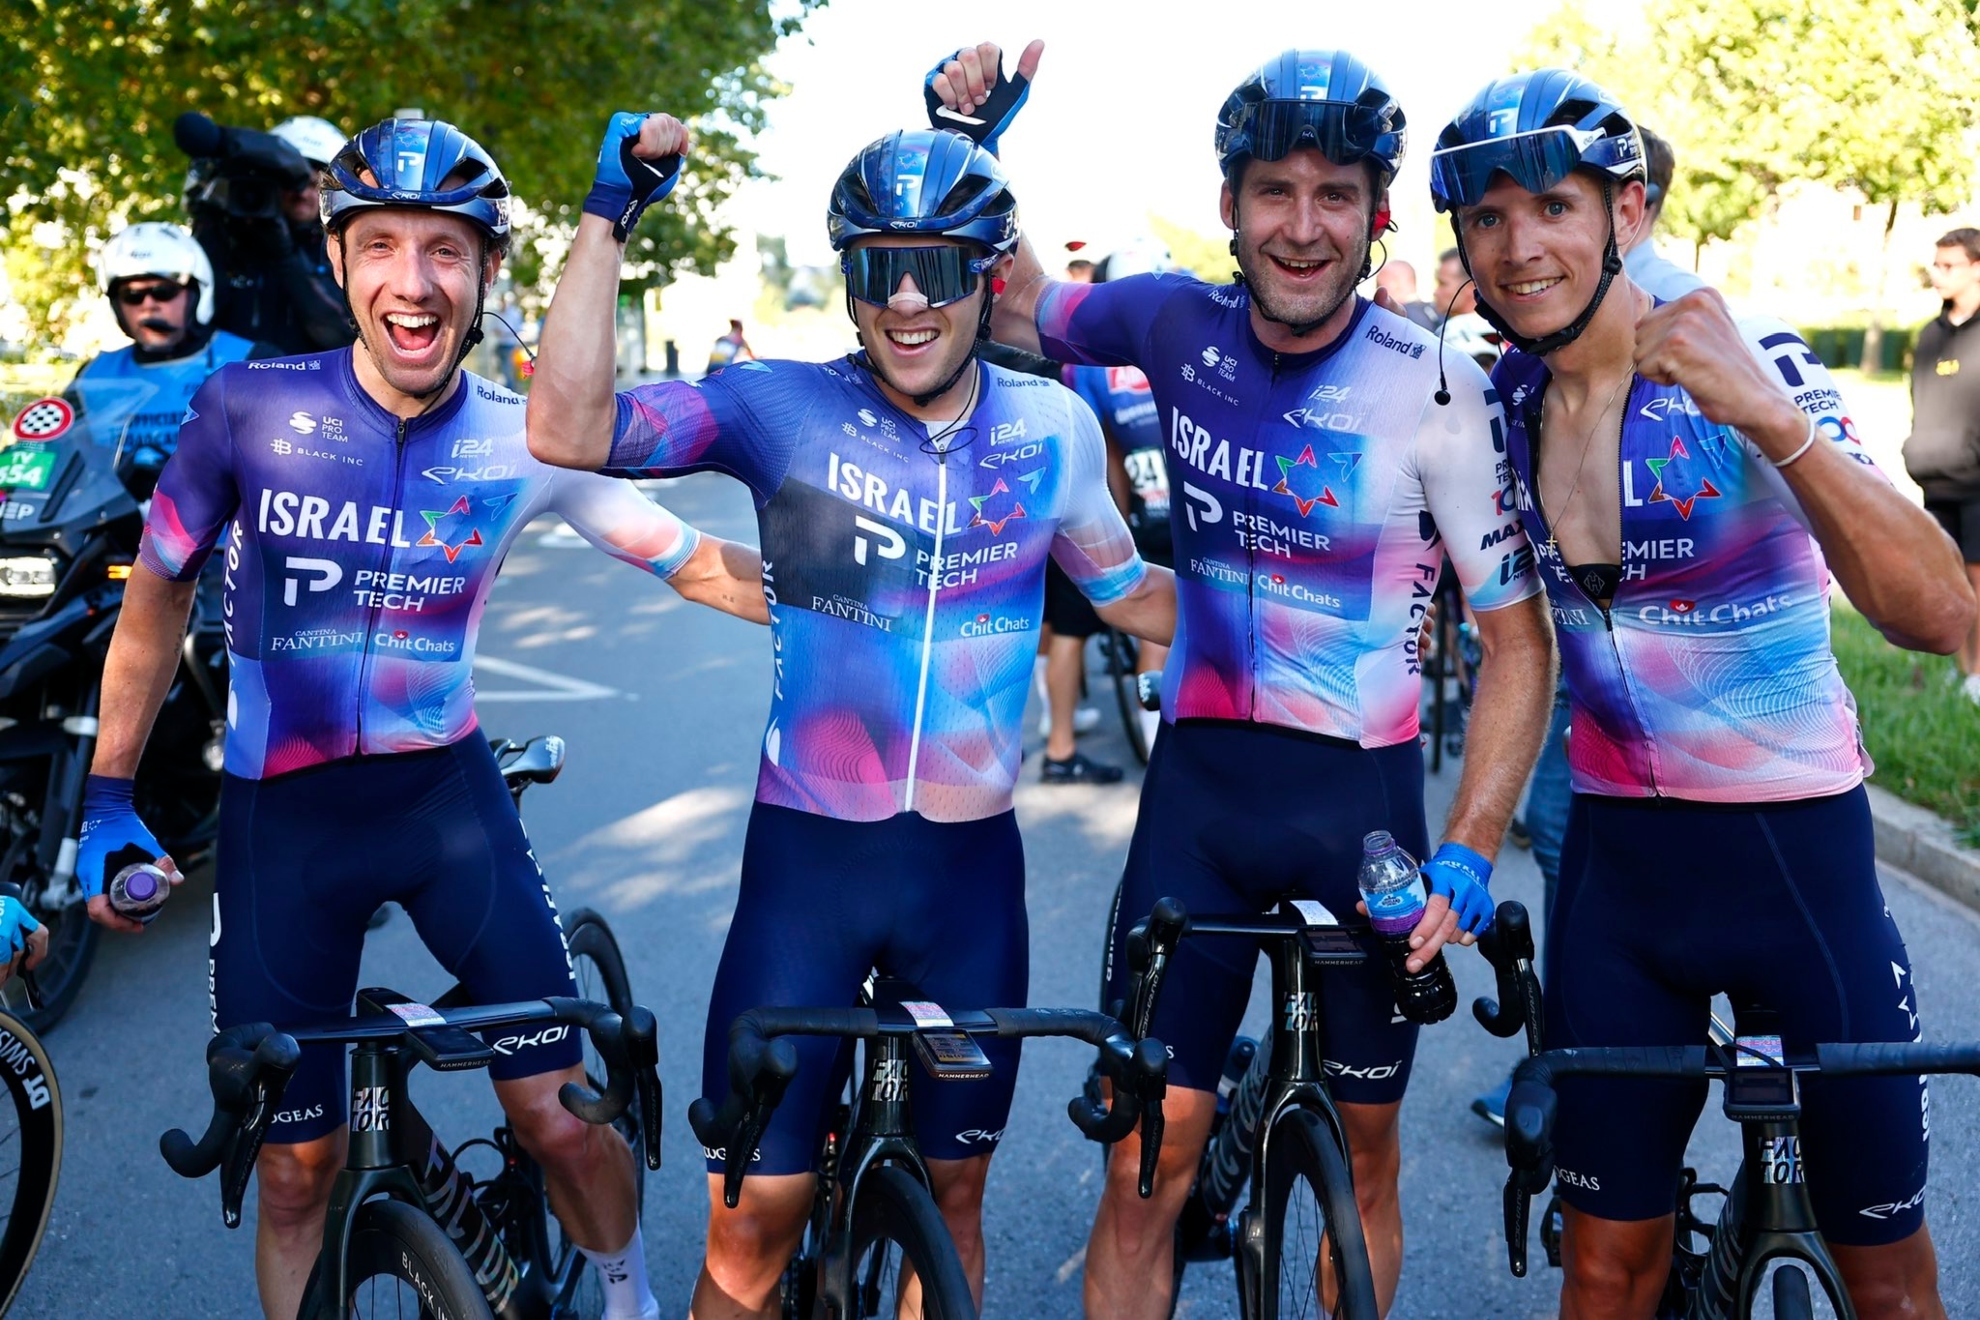 Los ciclistas se Israel - Premier Tech durante una carrera de la pasada temporada